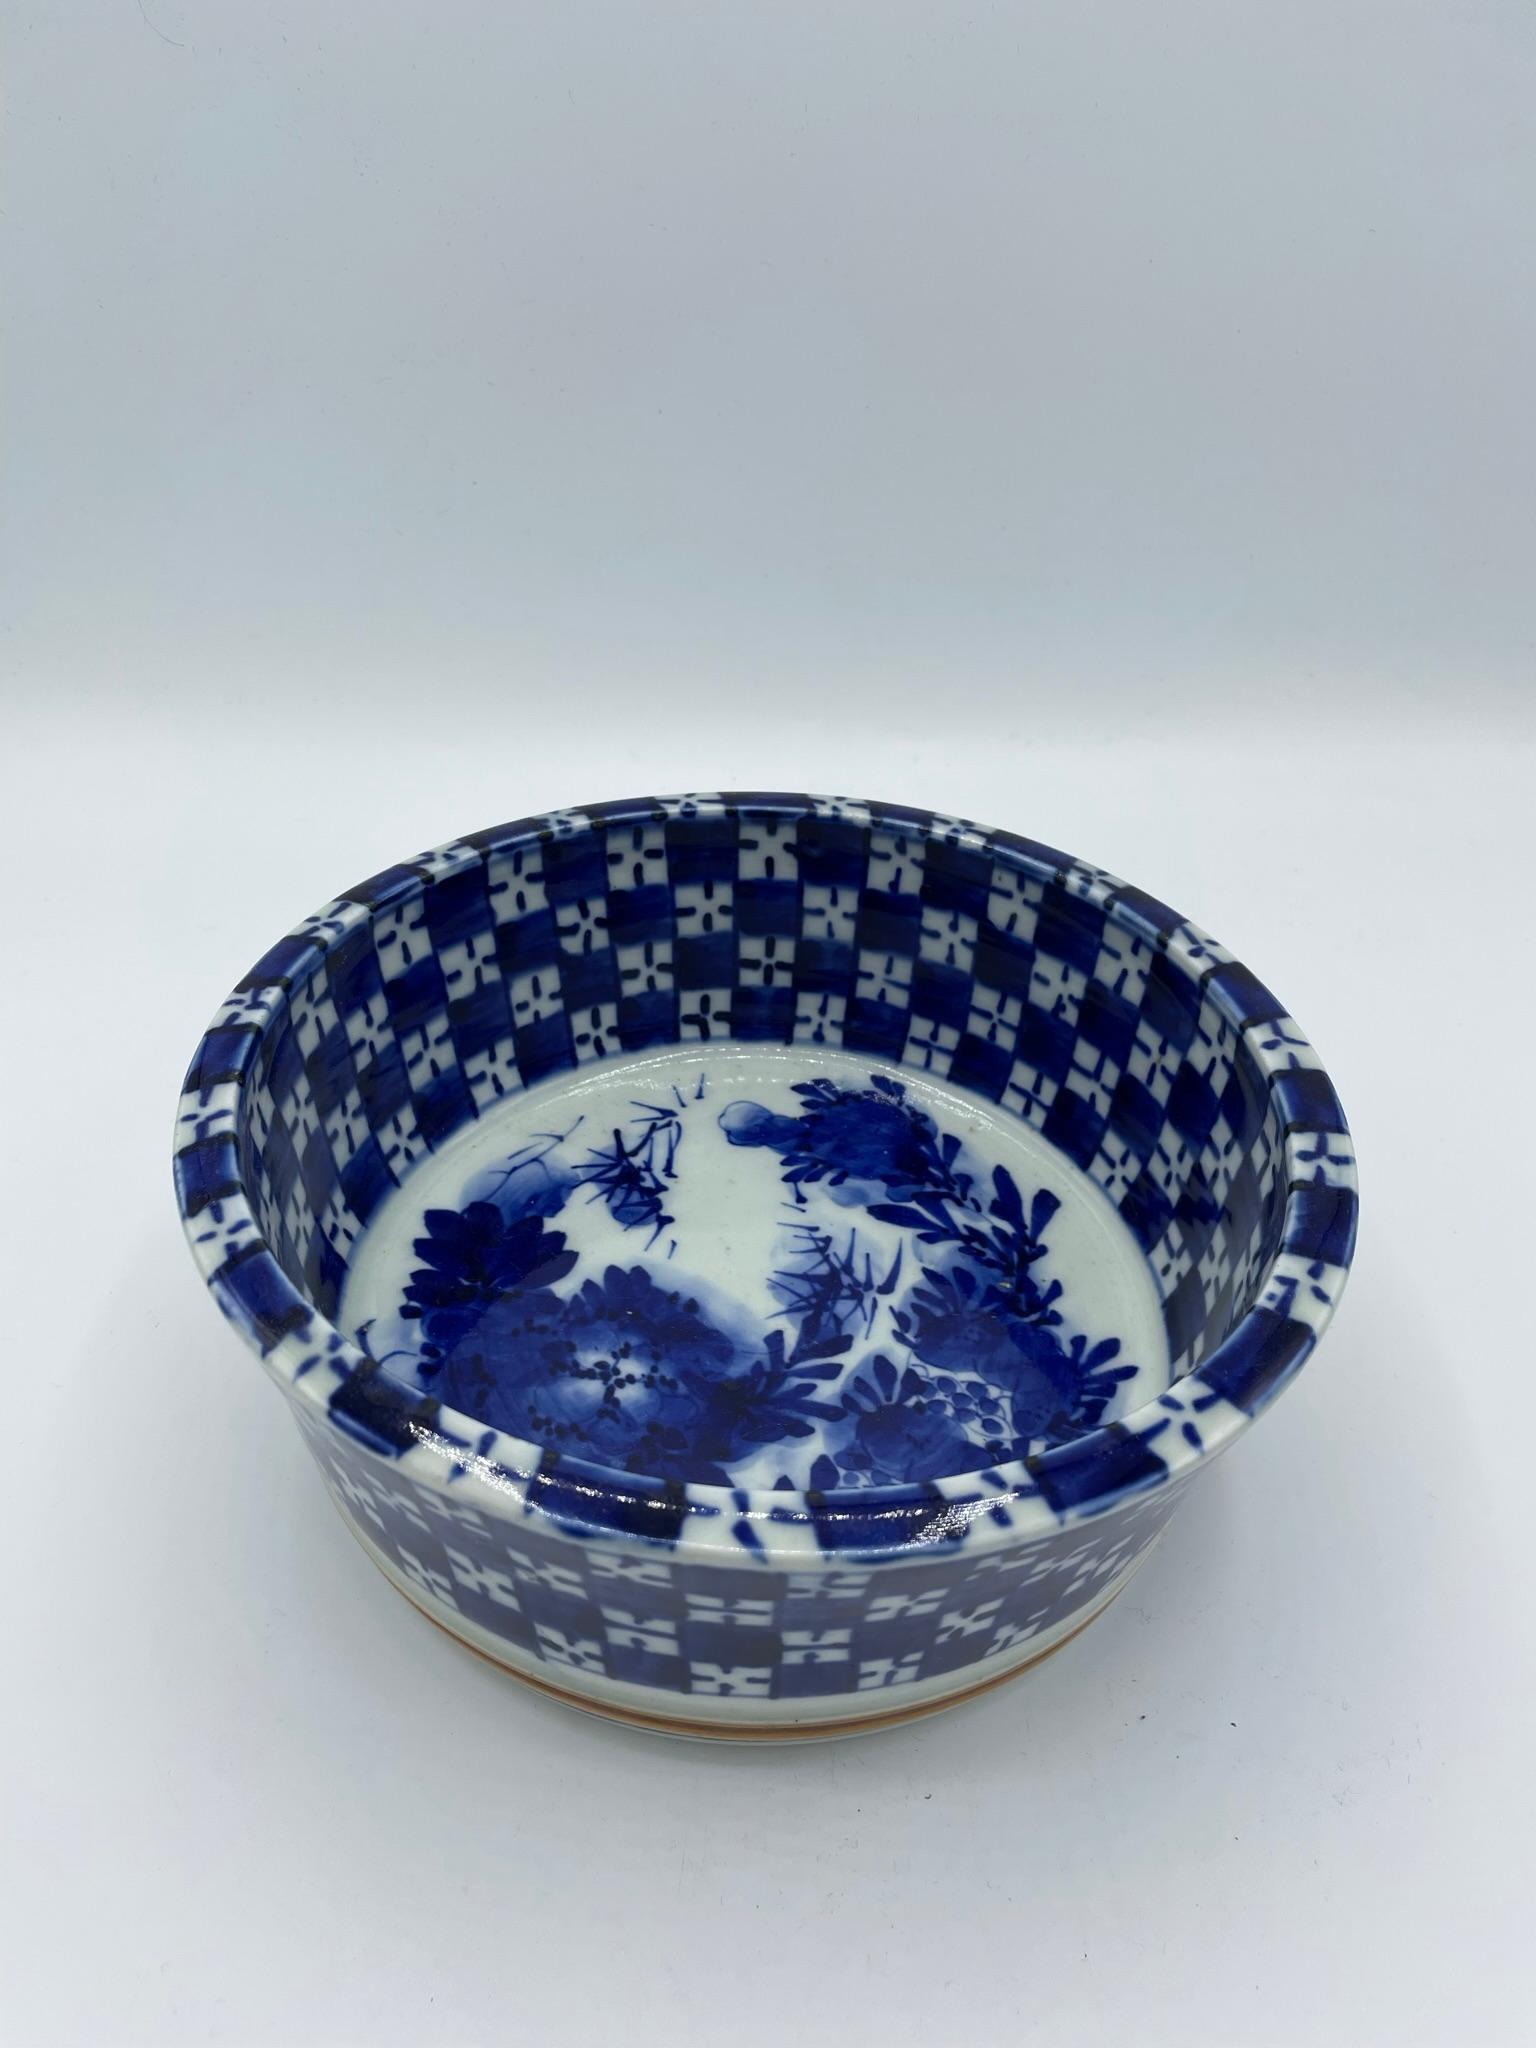 Il s'agit d'un bol fabriqué au Japon dans les années 1920 à l'époque Taisho.
Il peut être utilisé comme bol à nourriture mais aussi comme vase à fleurs.
La couleur est bleue et blanche, le fond est marron.
Il est peint à la main et constitue une